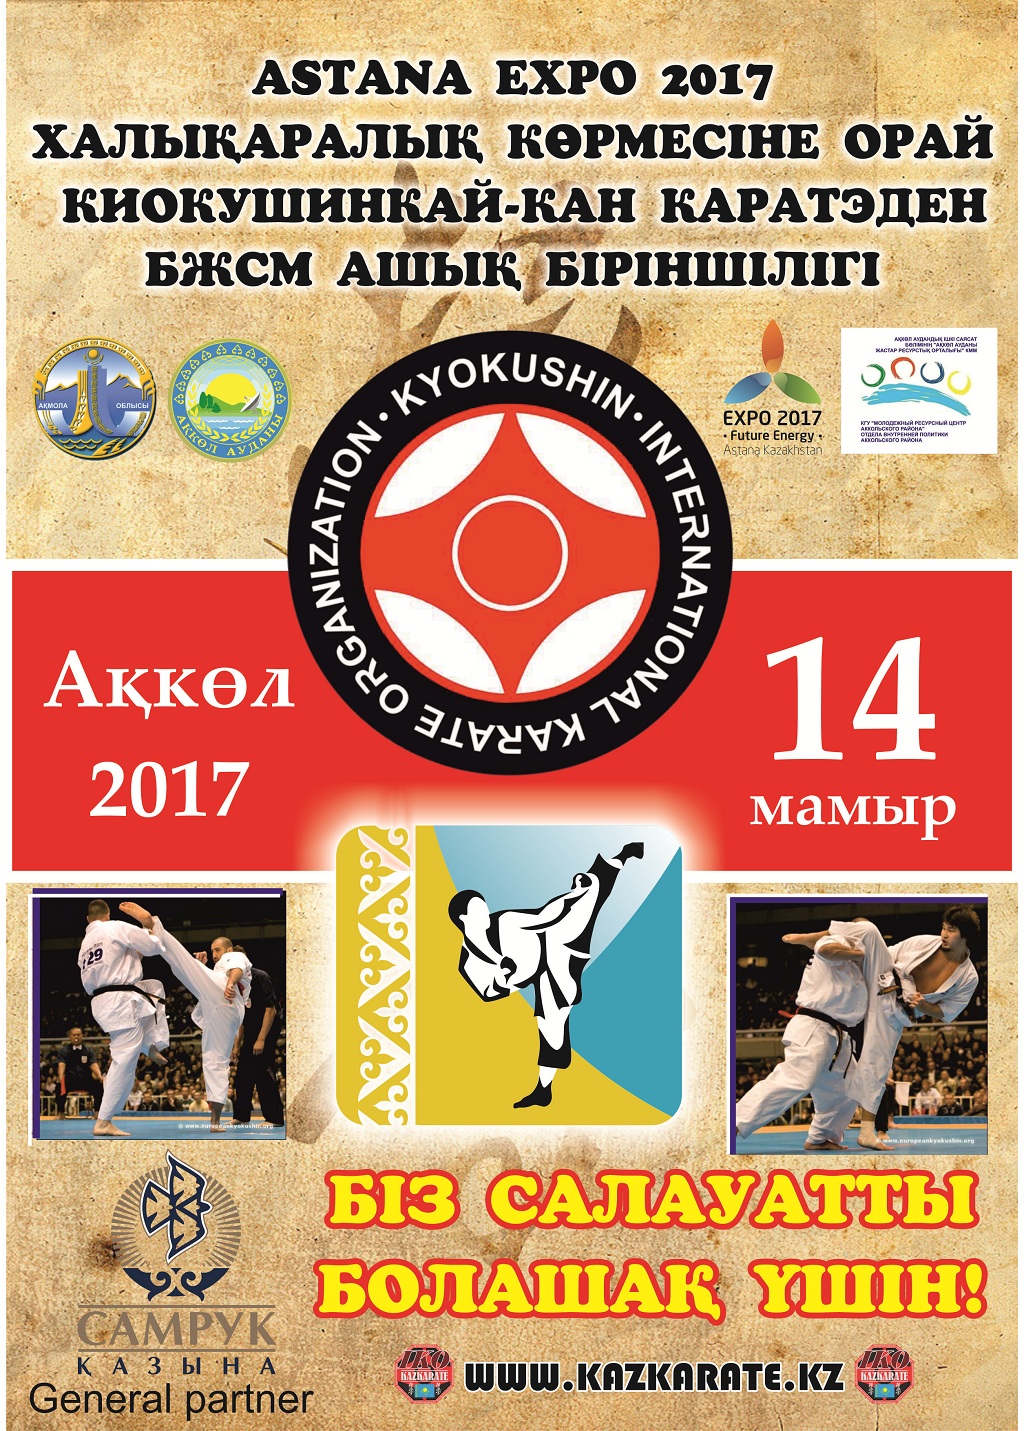 Ежегодное открытое первенство ДЮСШ по Киокушинкай-кан каратэ, посвященное международной выставке Astana EXPO-2017 среди детей, юношей и девушек